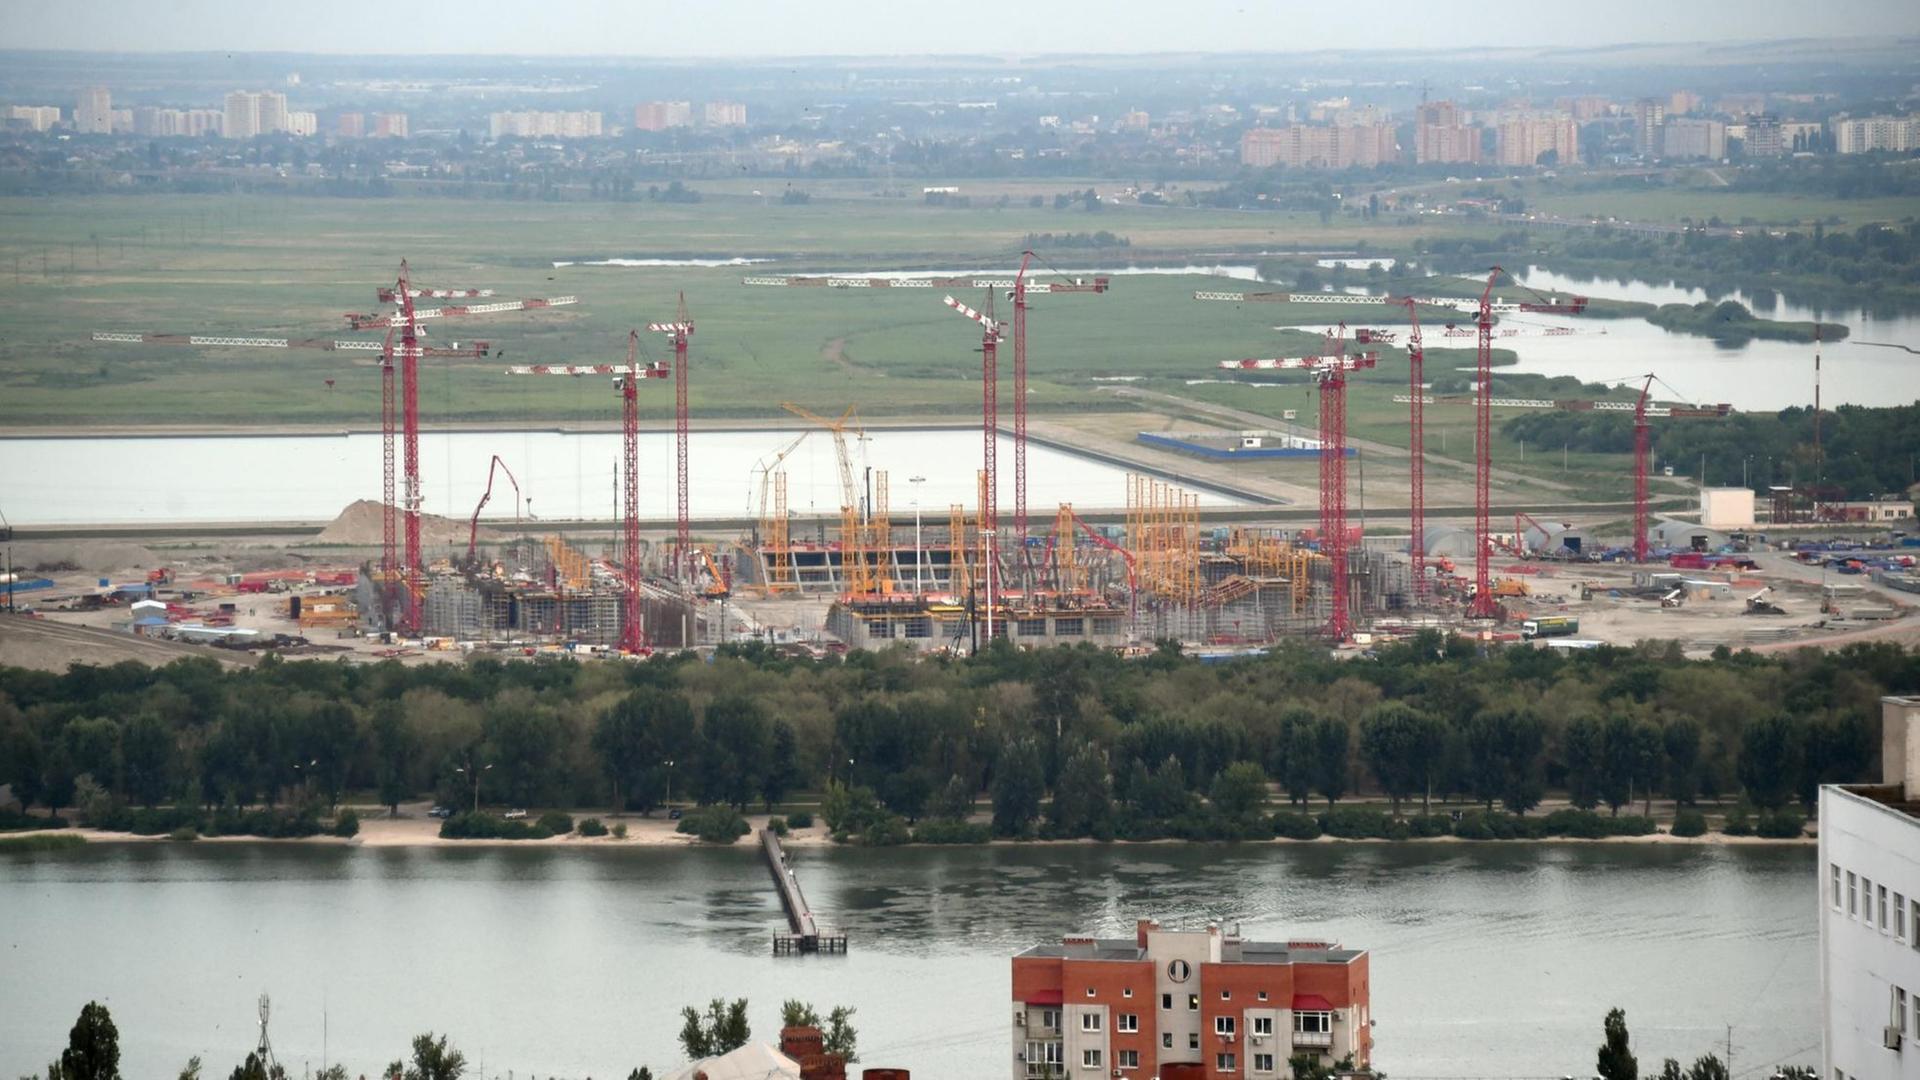 Die Baustelle des zukünftigen WM-Stadions, aufgenommen am 14.07.2015 in Rostow am Don (Russland). Die Stadt am Don ist einer der Austragungsorte der Fußball-Weltmeisterschaft 2018.